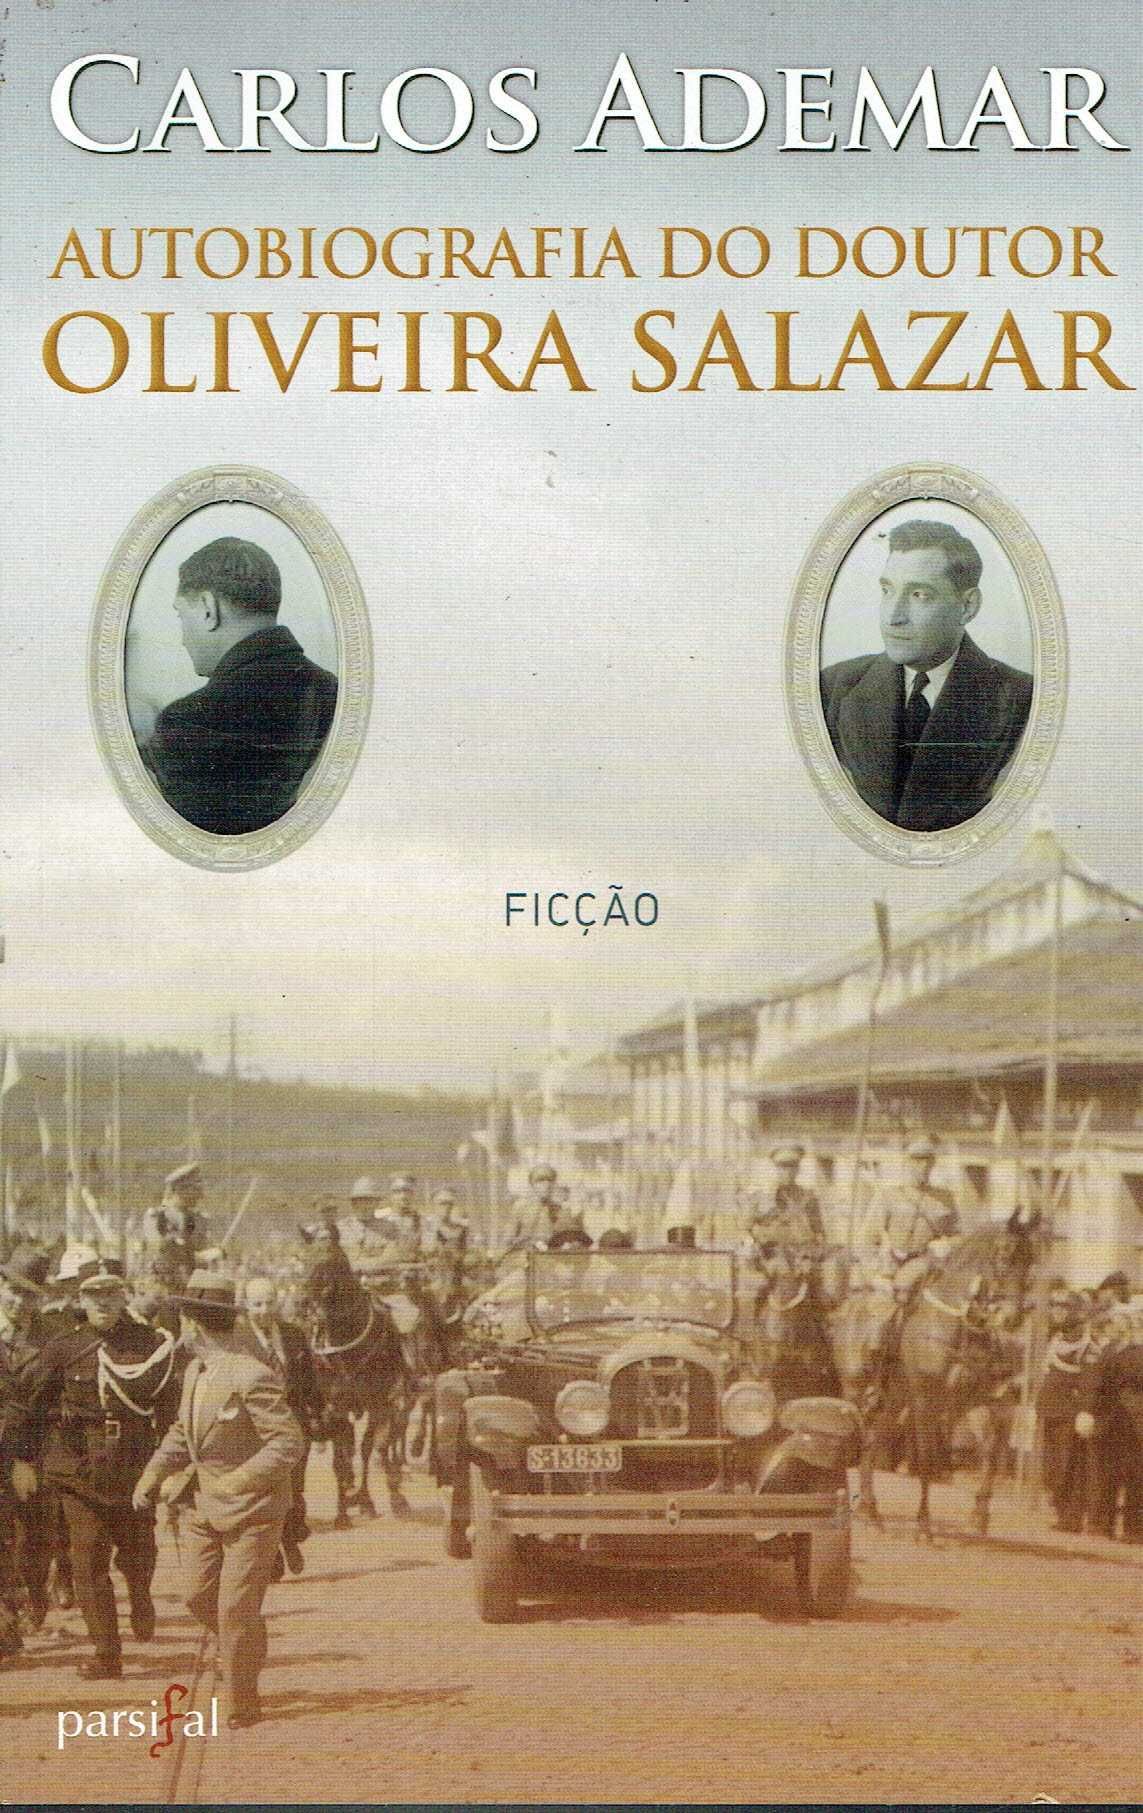 11562

Autobiografia do Doutor Oliveira Salazar
de Carlos Ademar